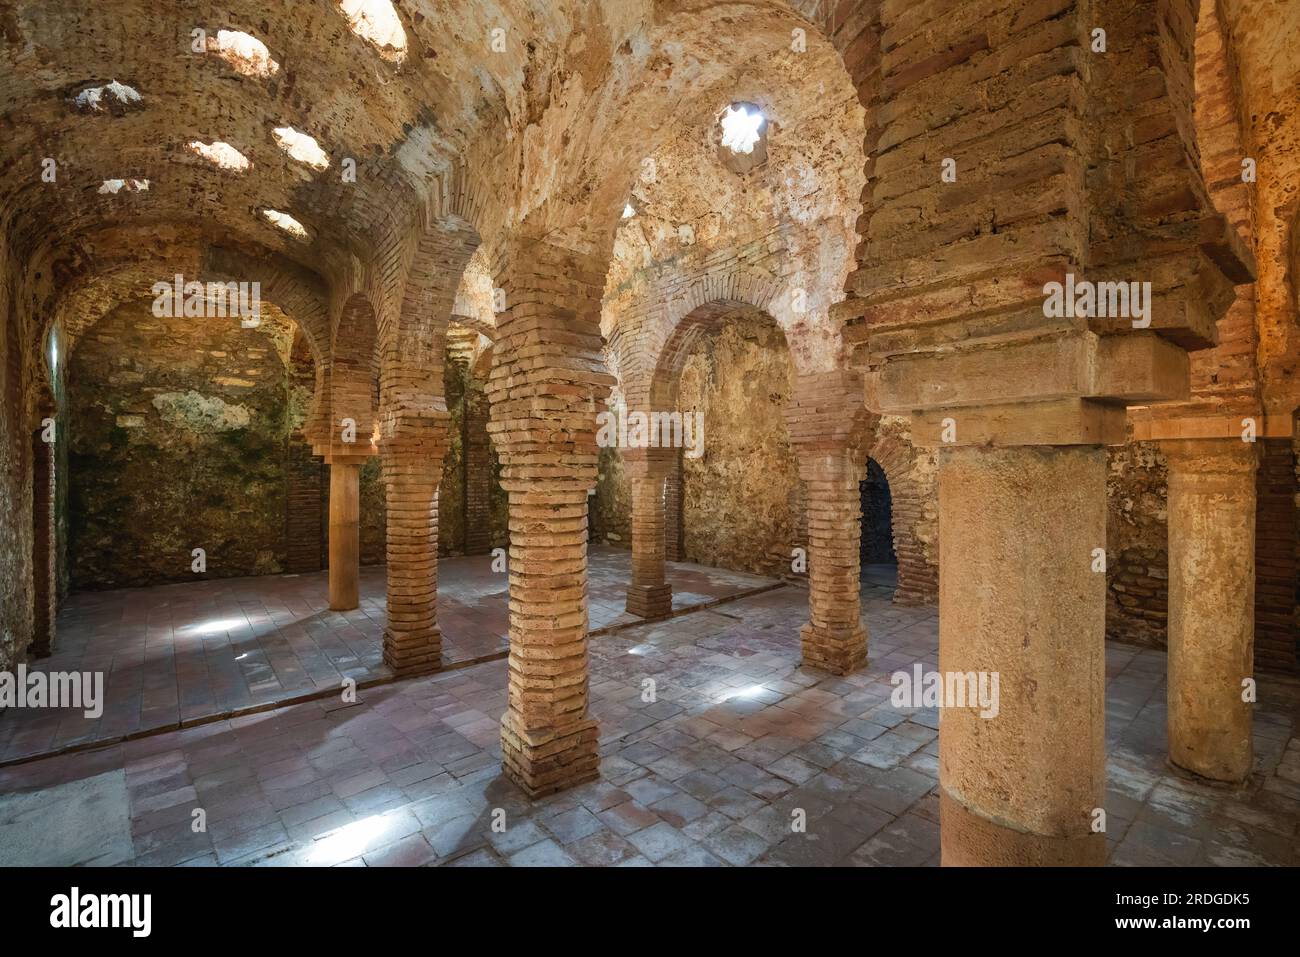 Chambre chaleureuse à Arab Baths of Ronda Interior - Ronda, Andalousie, Espagne Banque D'Images